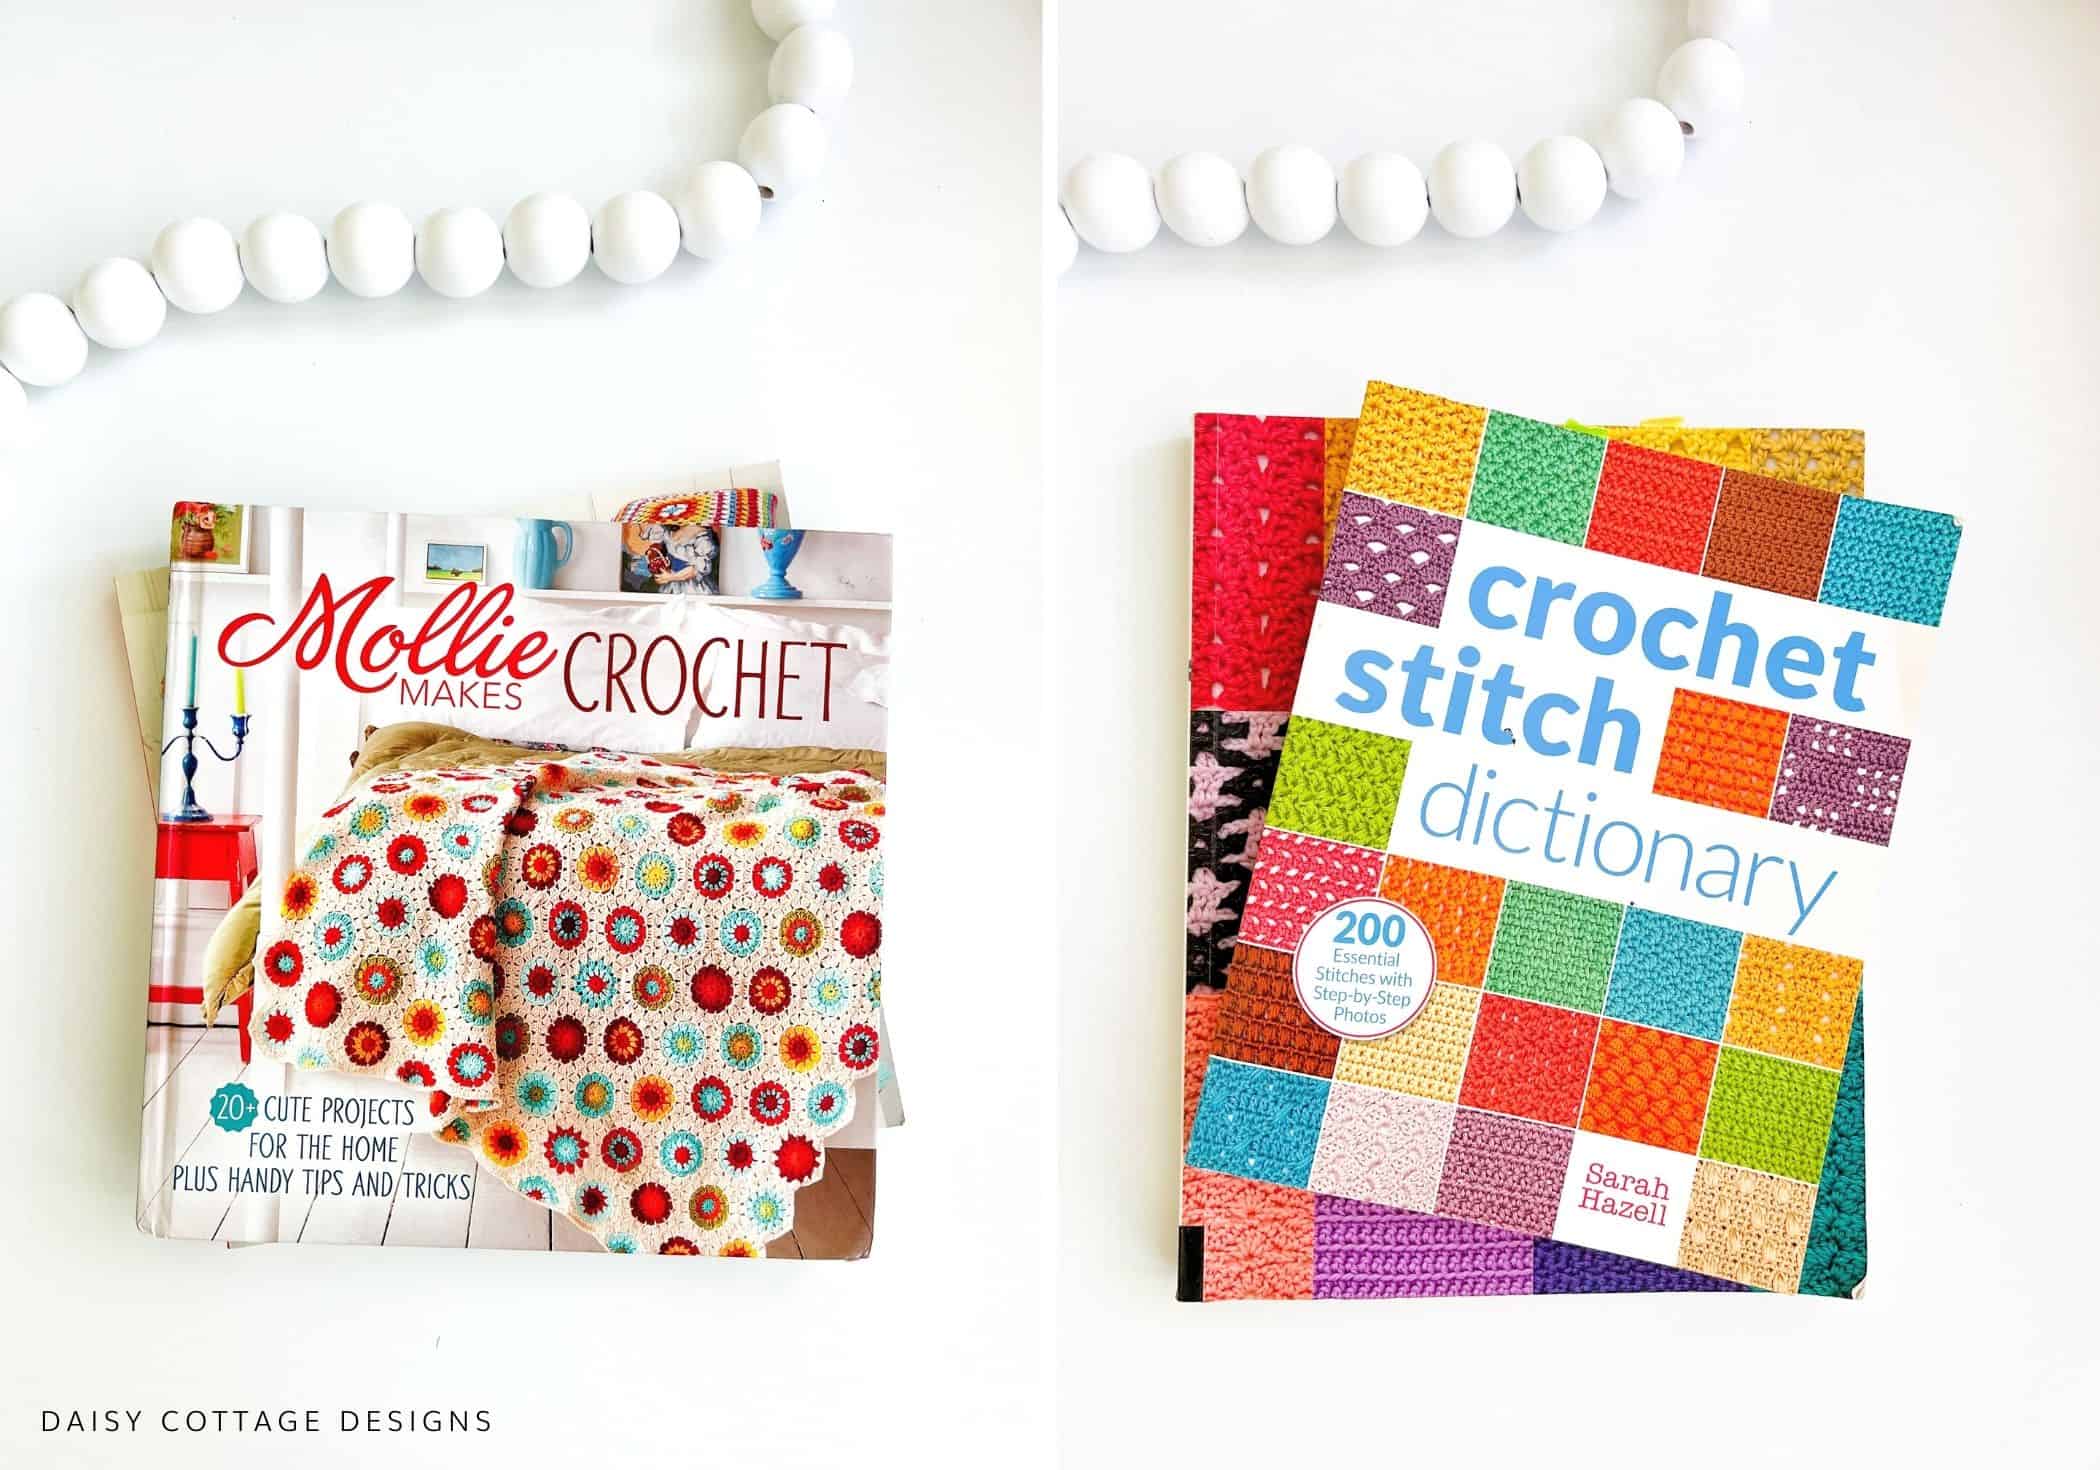 Crochet Stitch Books and Crochet Pattern Books